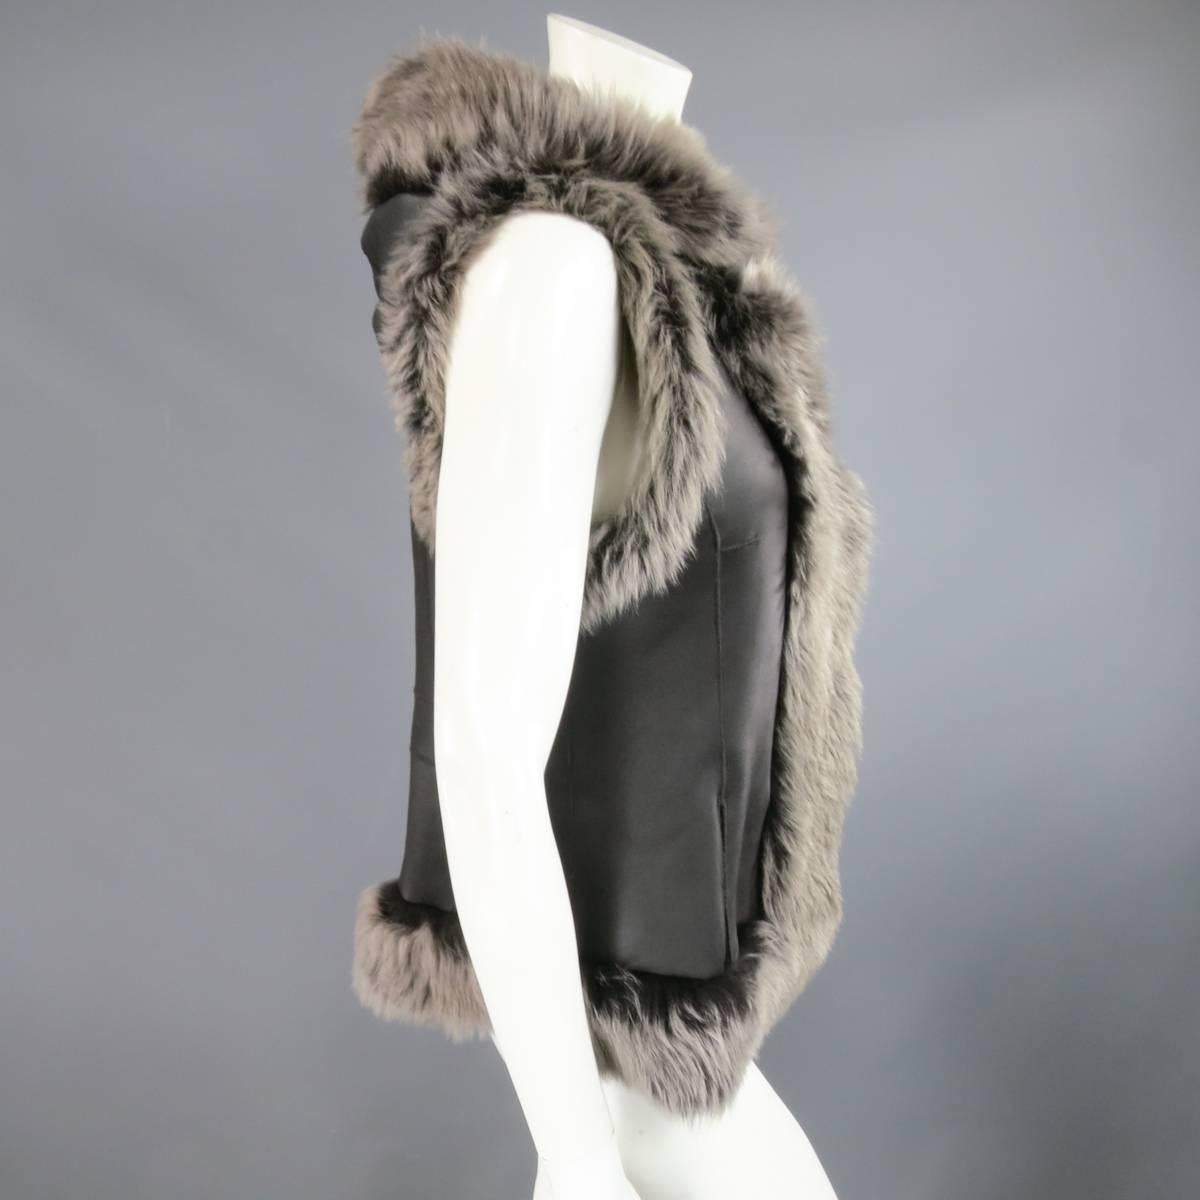 ROSENBERG & LENHART Size 8 Gray & Black Hooded Lamb Fur Shearling Leather Vest 3